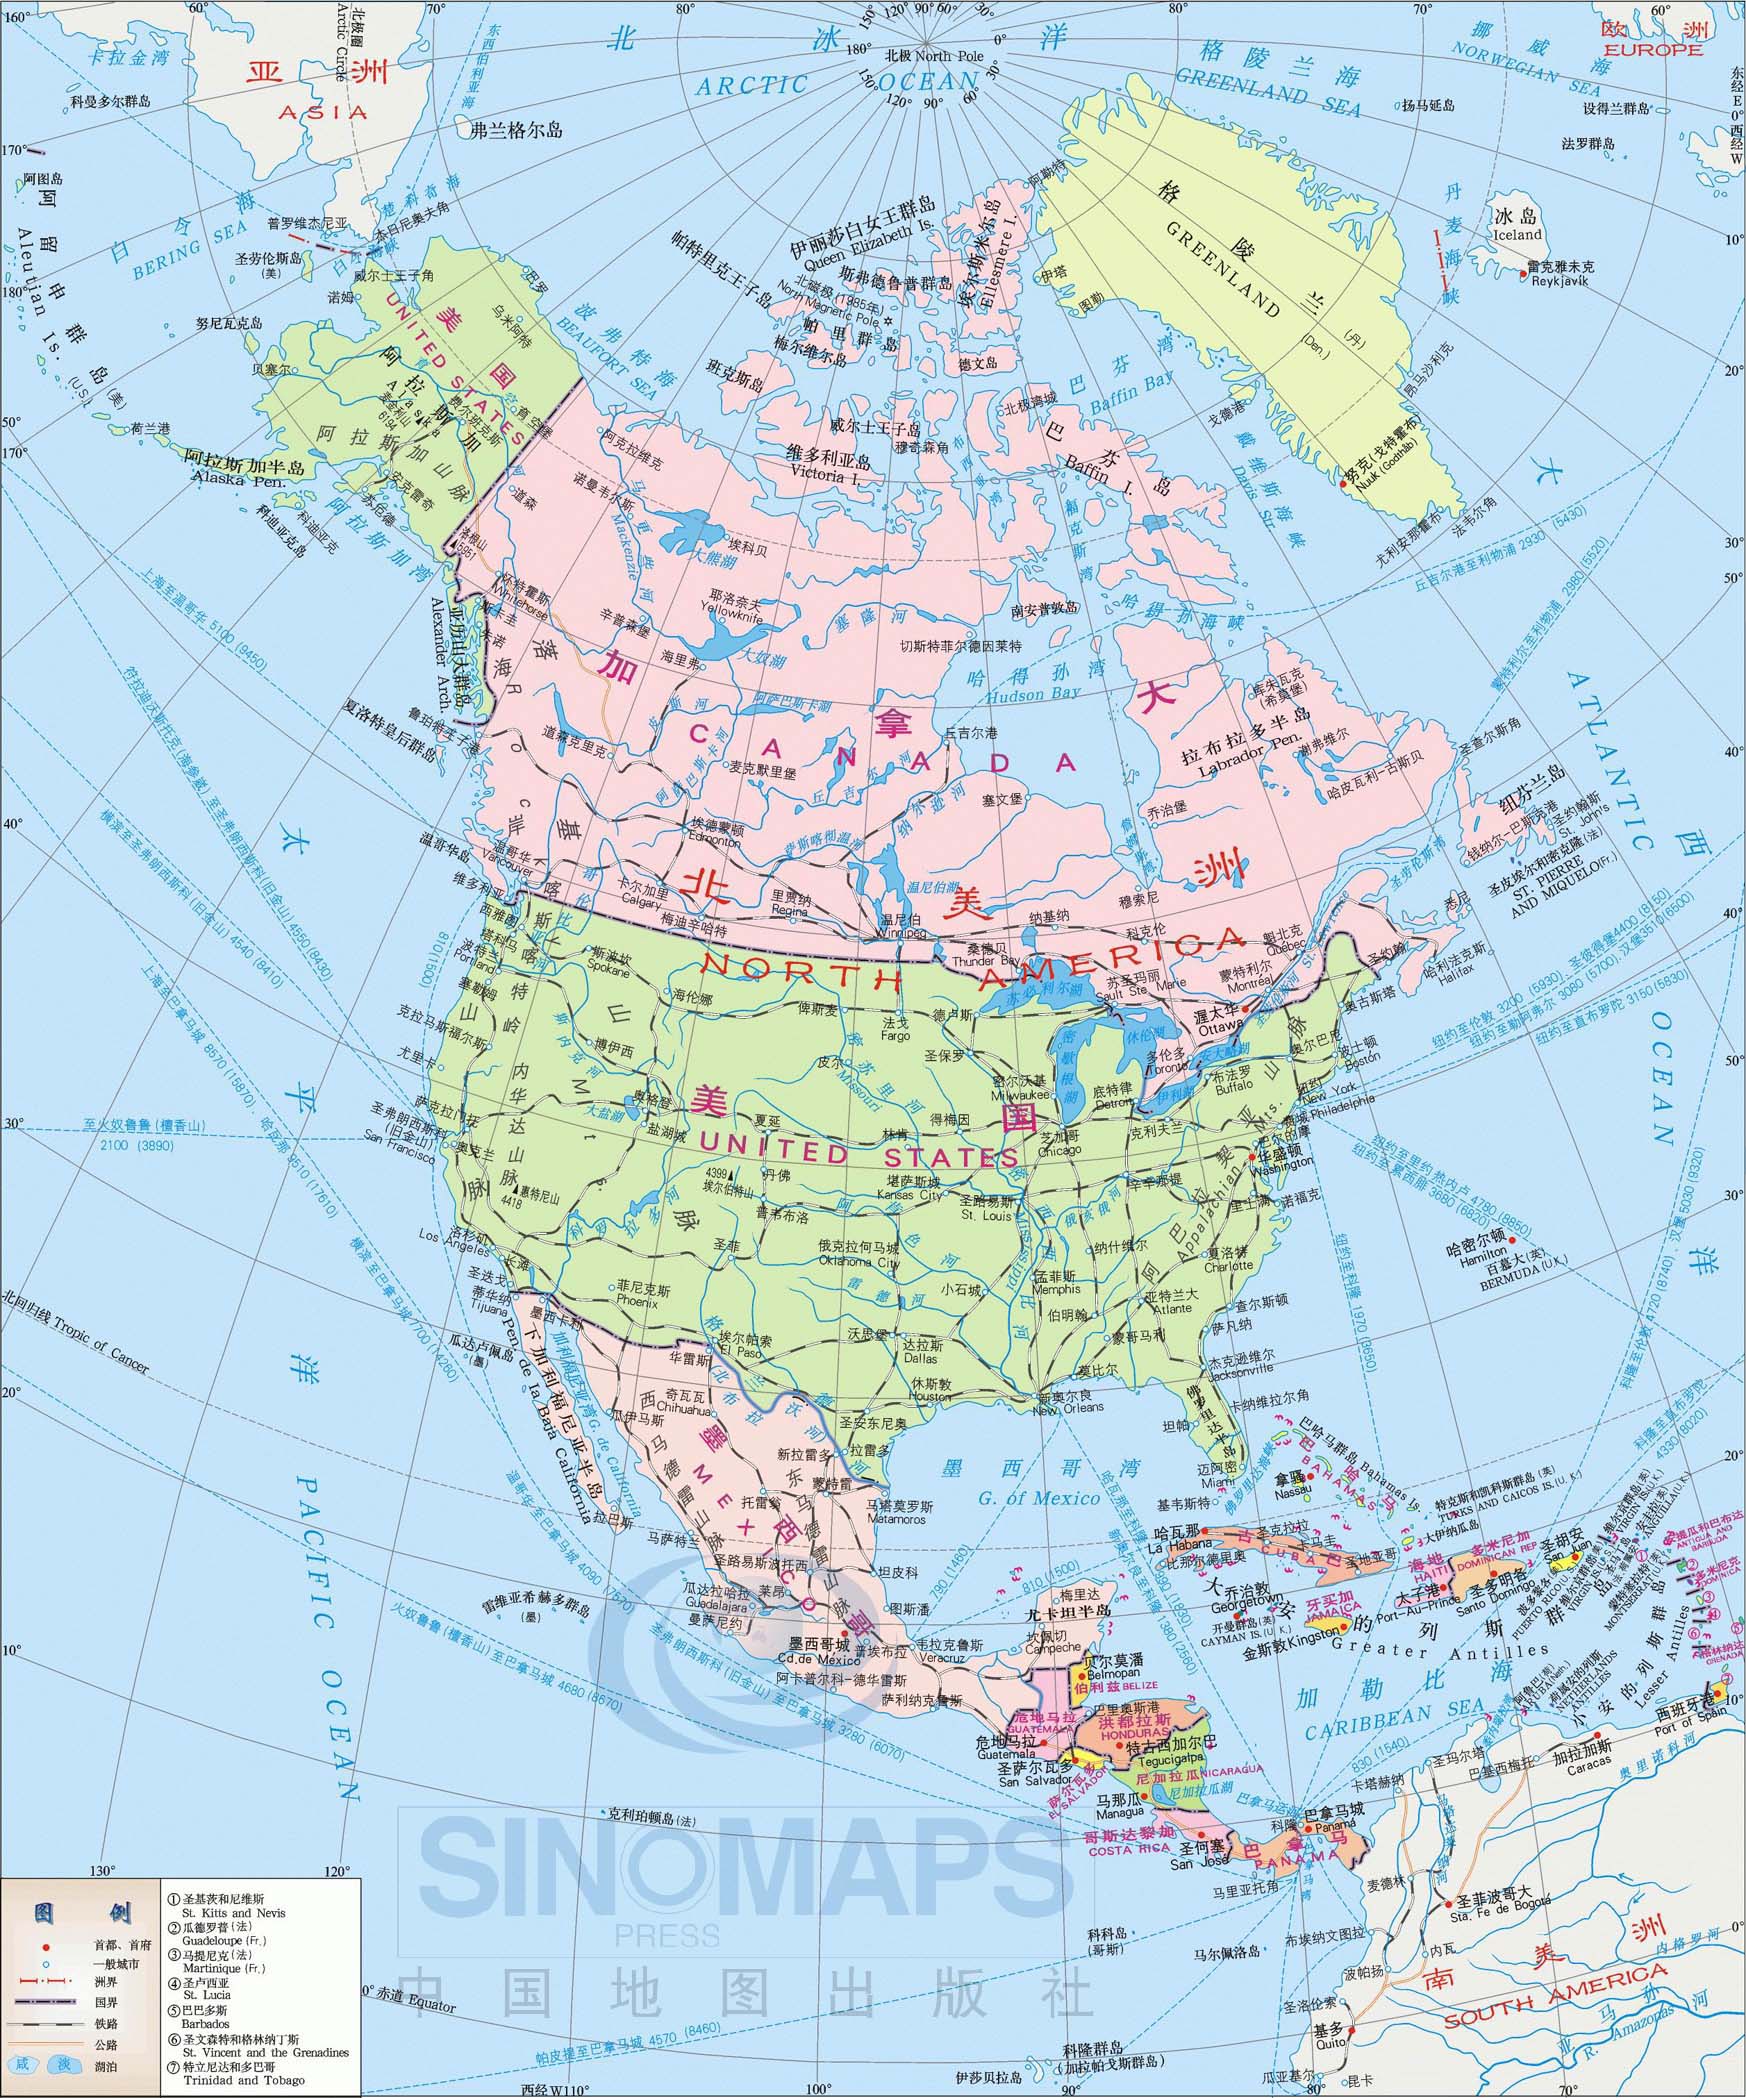 加拿大交通地图,加拿大旅游景点地图查询  地之图 世界地图 北美洲